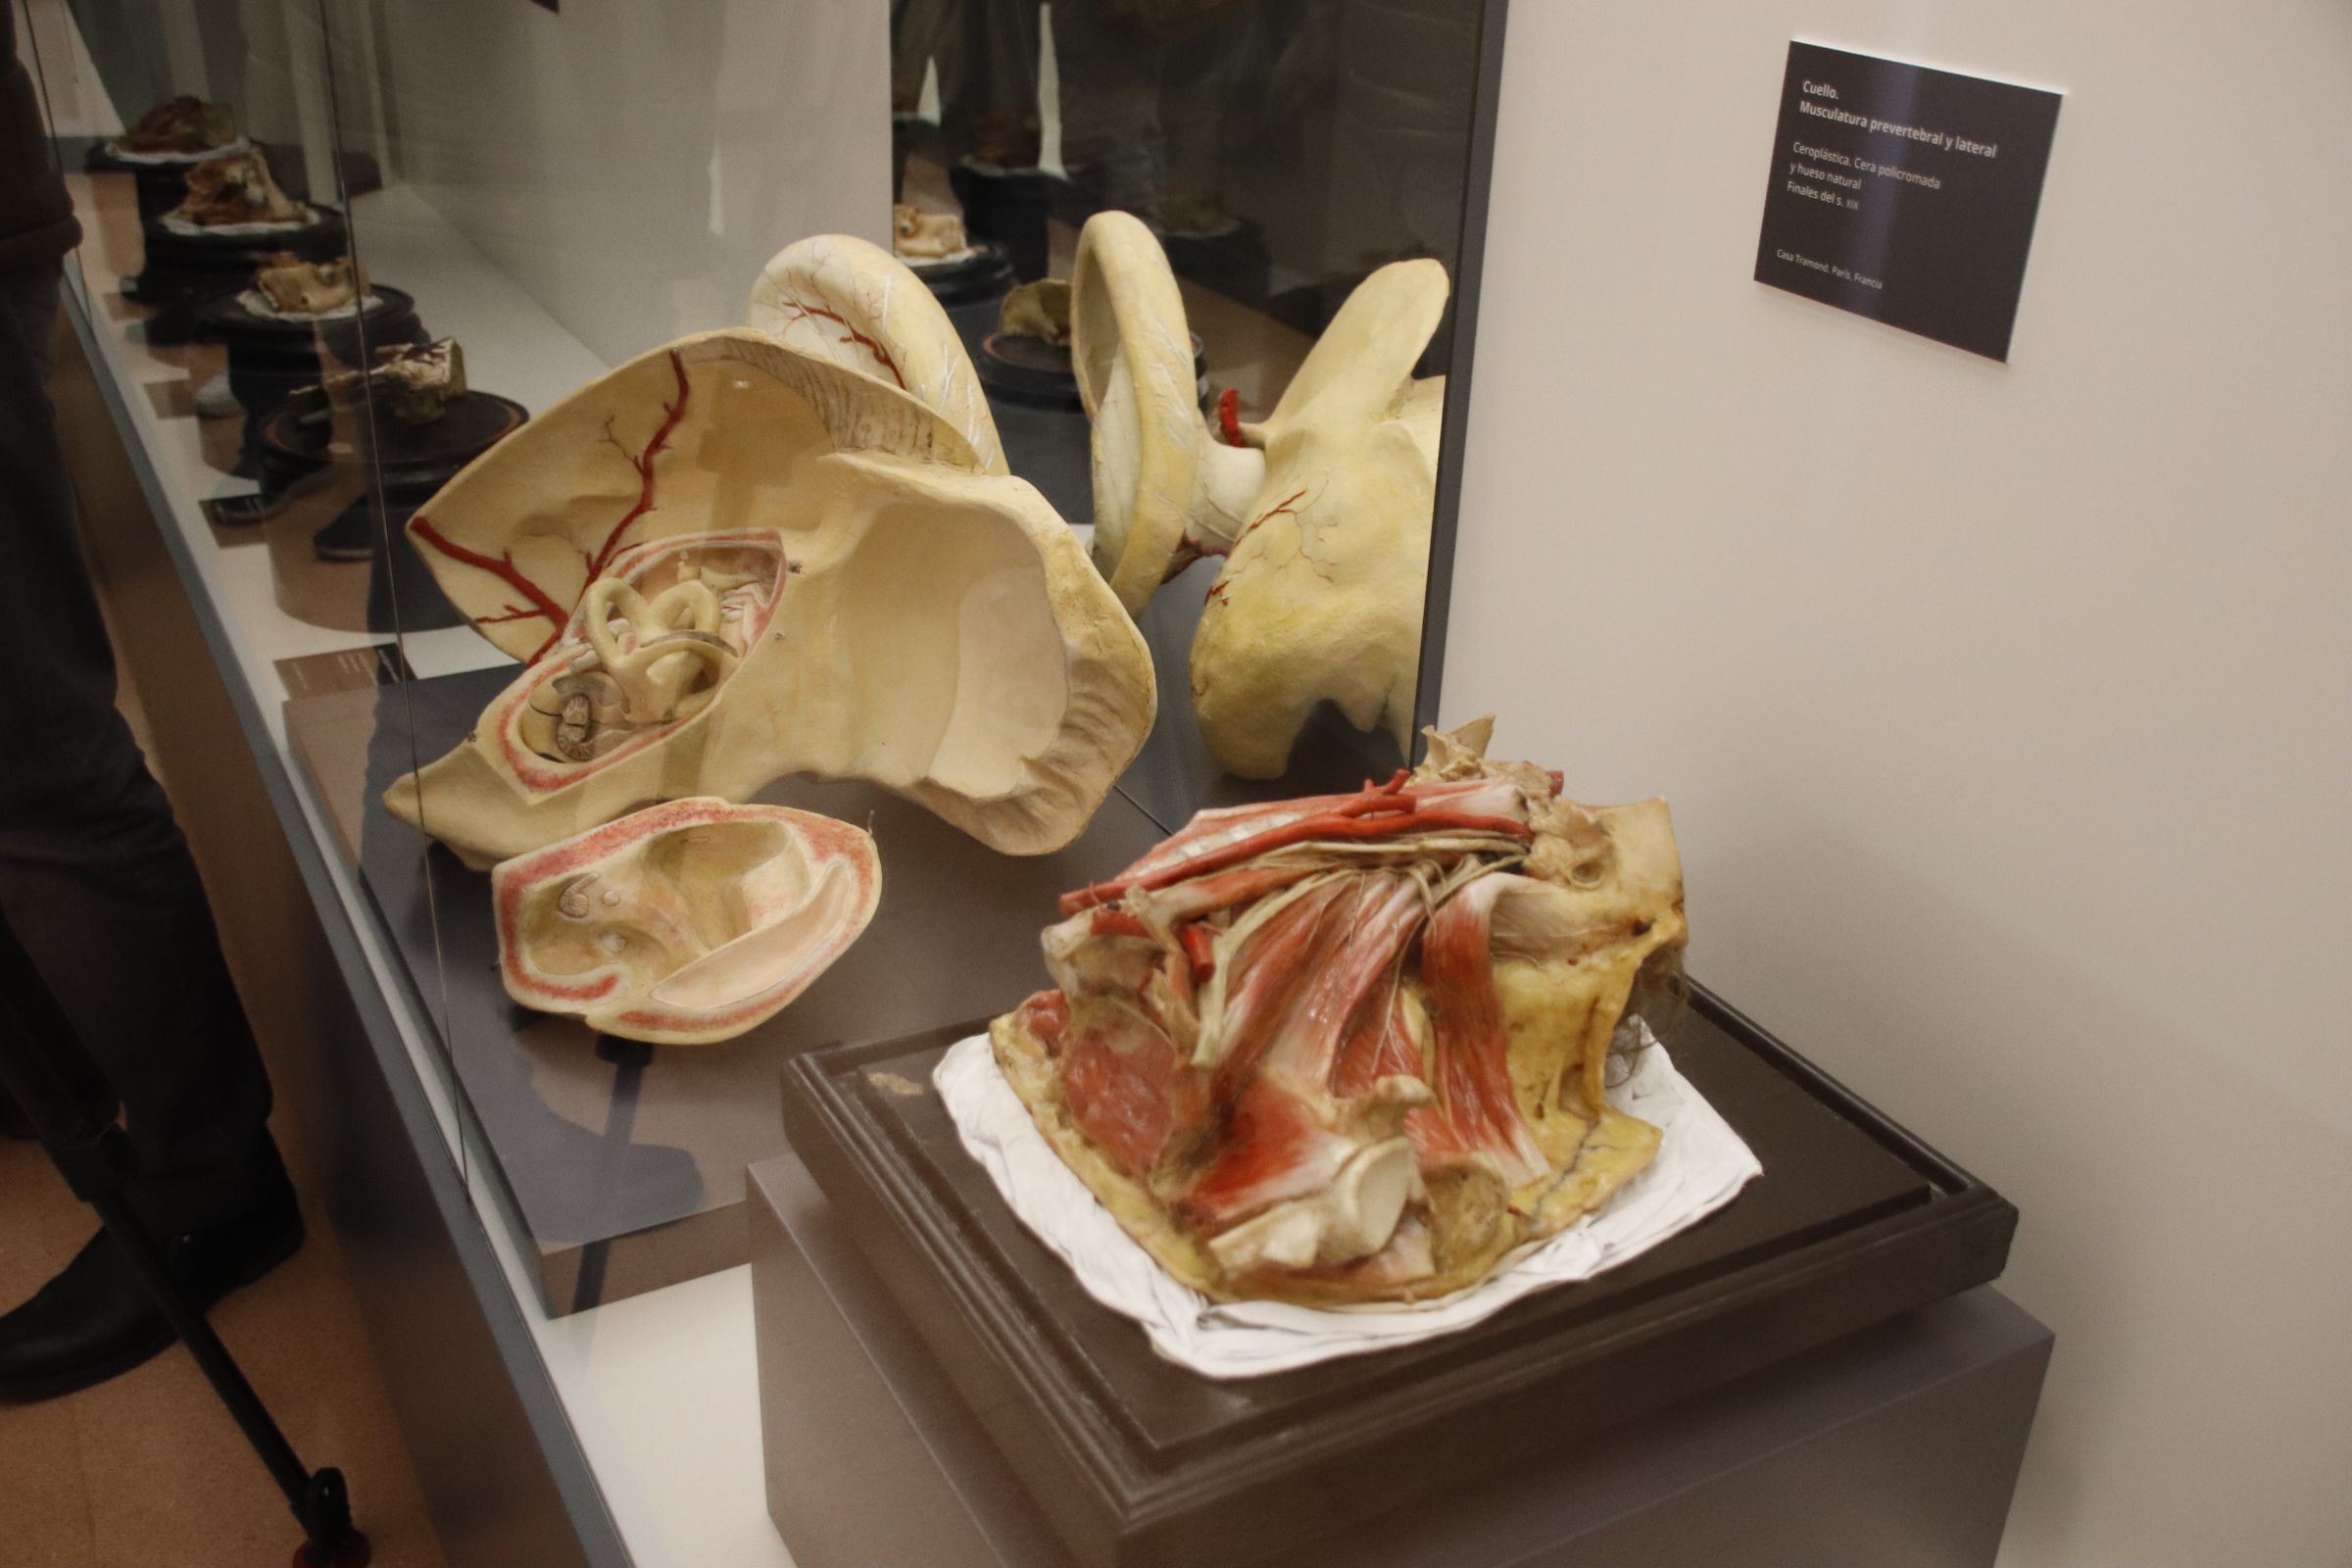 figuras anatómicas de cera coloreada de los siglos XIX y XX conservadas en el Departamento de Anatomía e Histologías Humanas de la Universidad de Salamanca